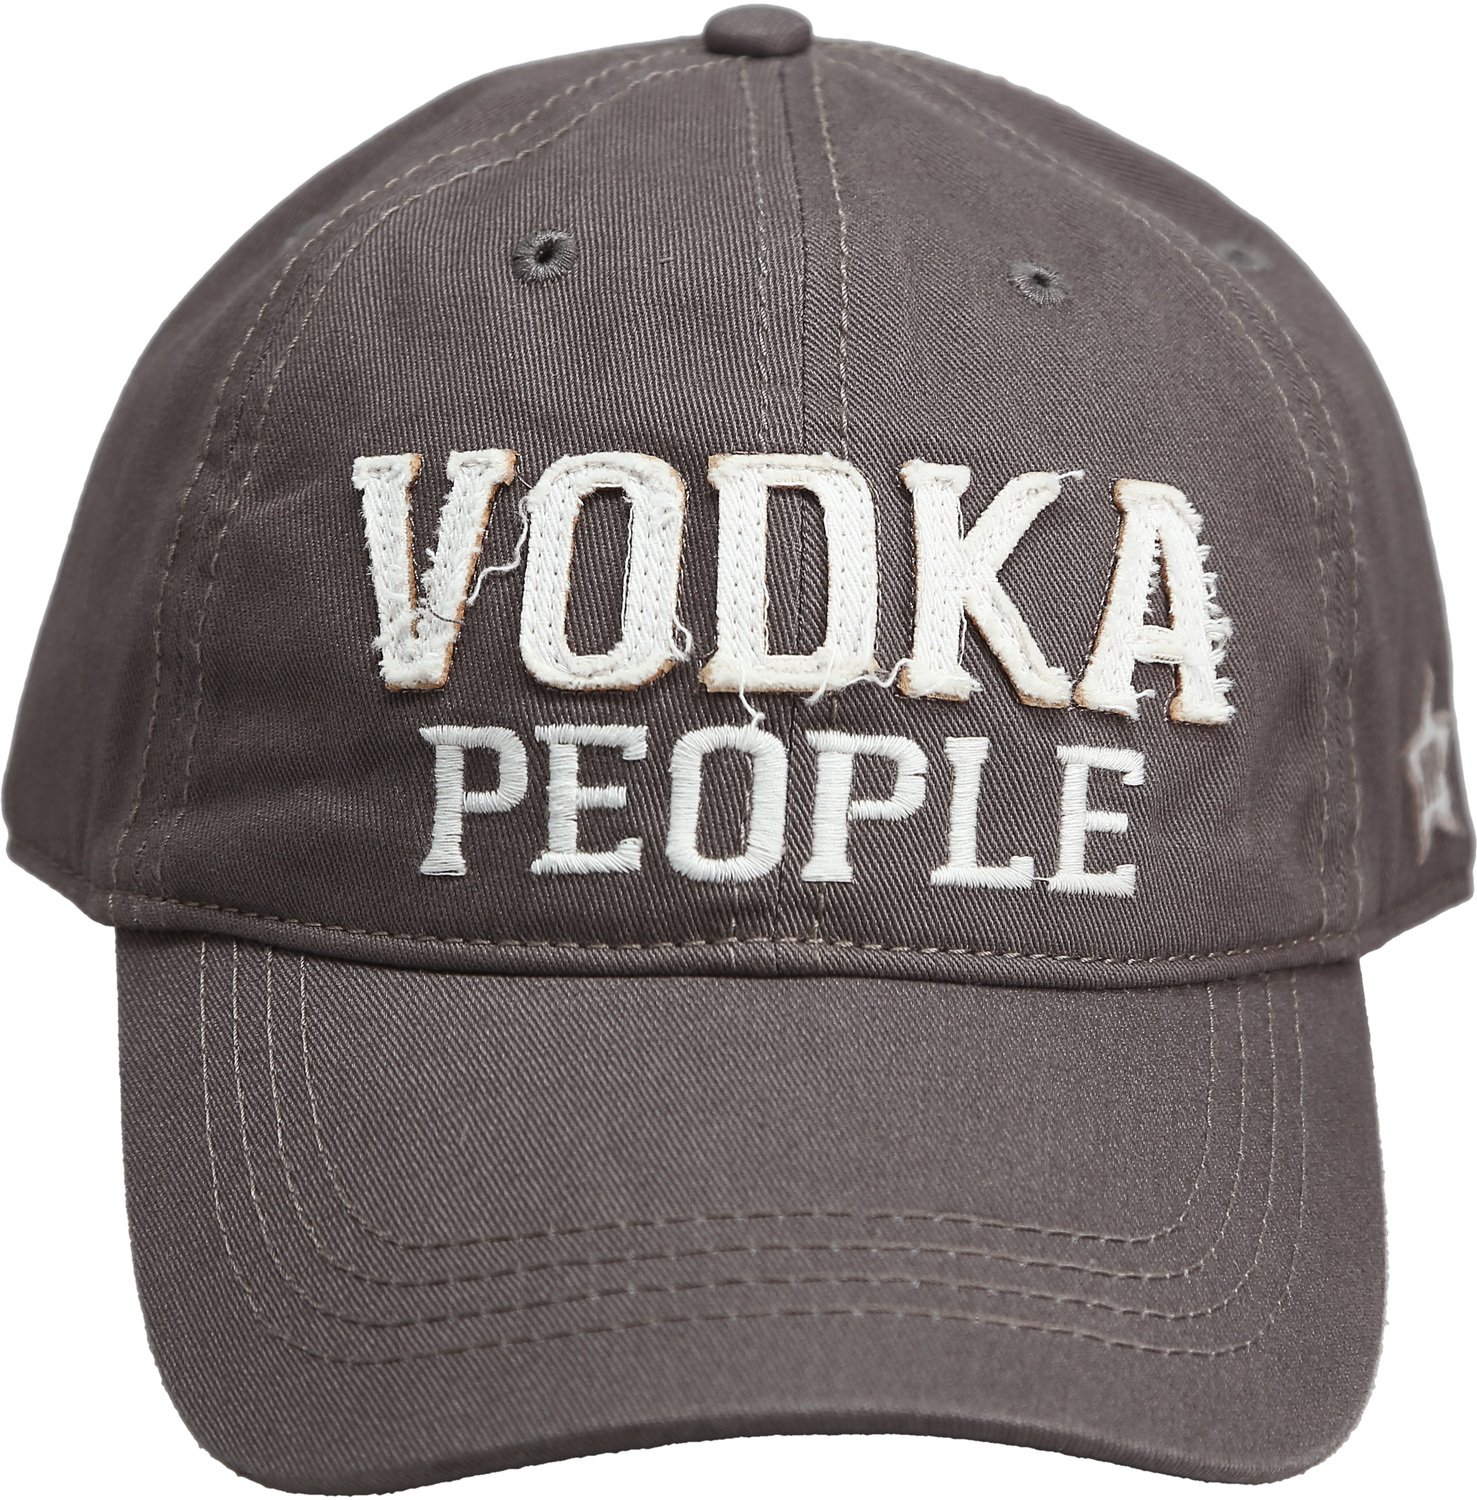 Vodka People by We People - Vodka People - Dark Gray Adjustable Hat